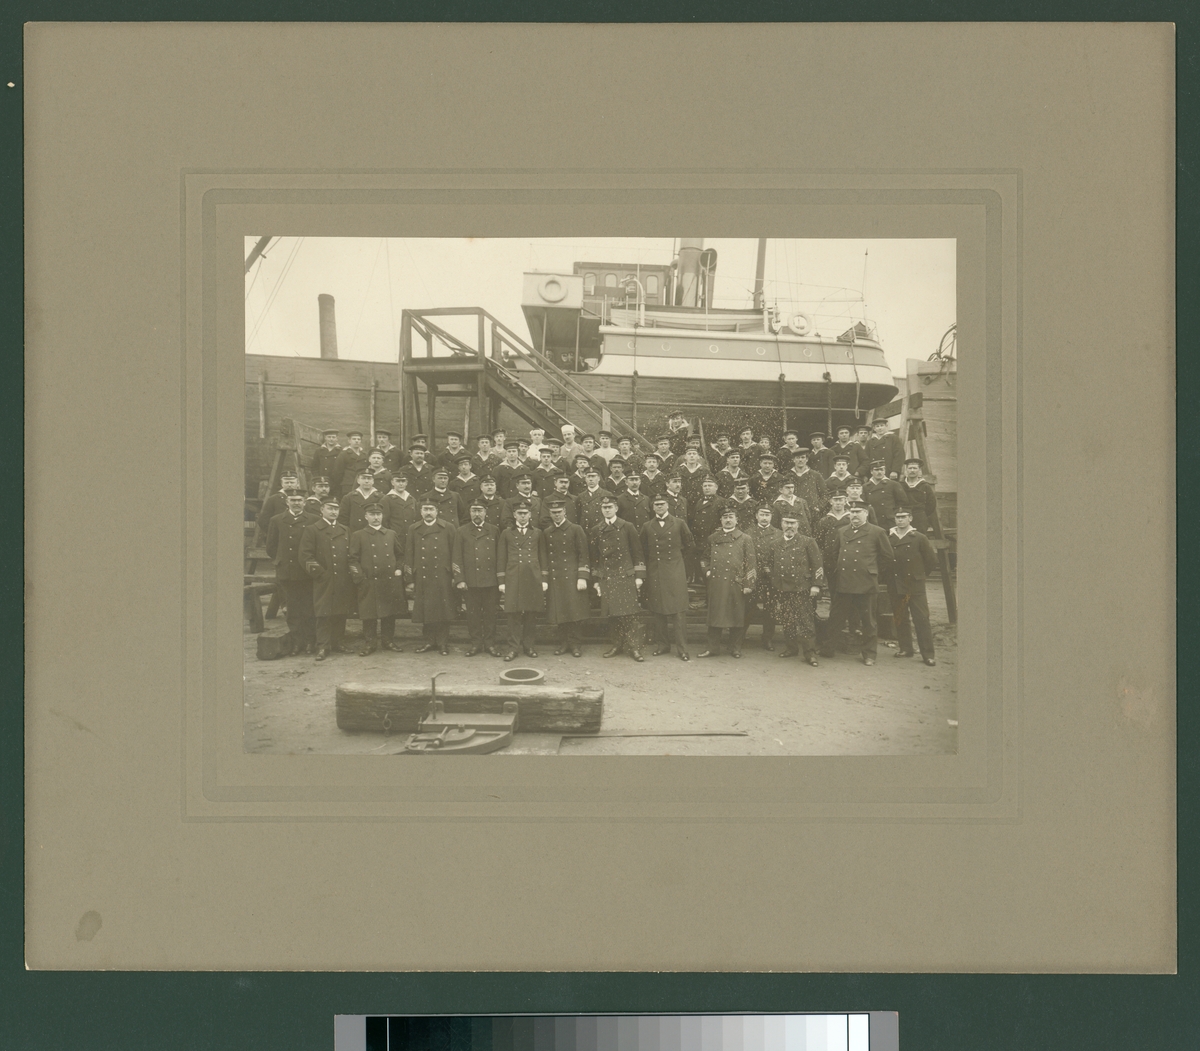 Bilden visar en grupp officerare, underofficerare och manskap från Svenska Flottan som har tagit uppställning för gruppfotografering framför ett träfartyg som ligger på land i ett hamnområde.